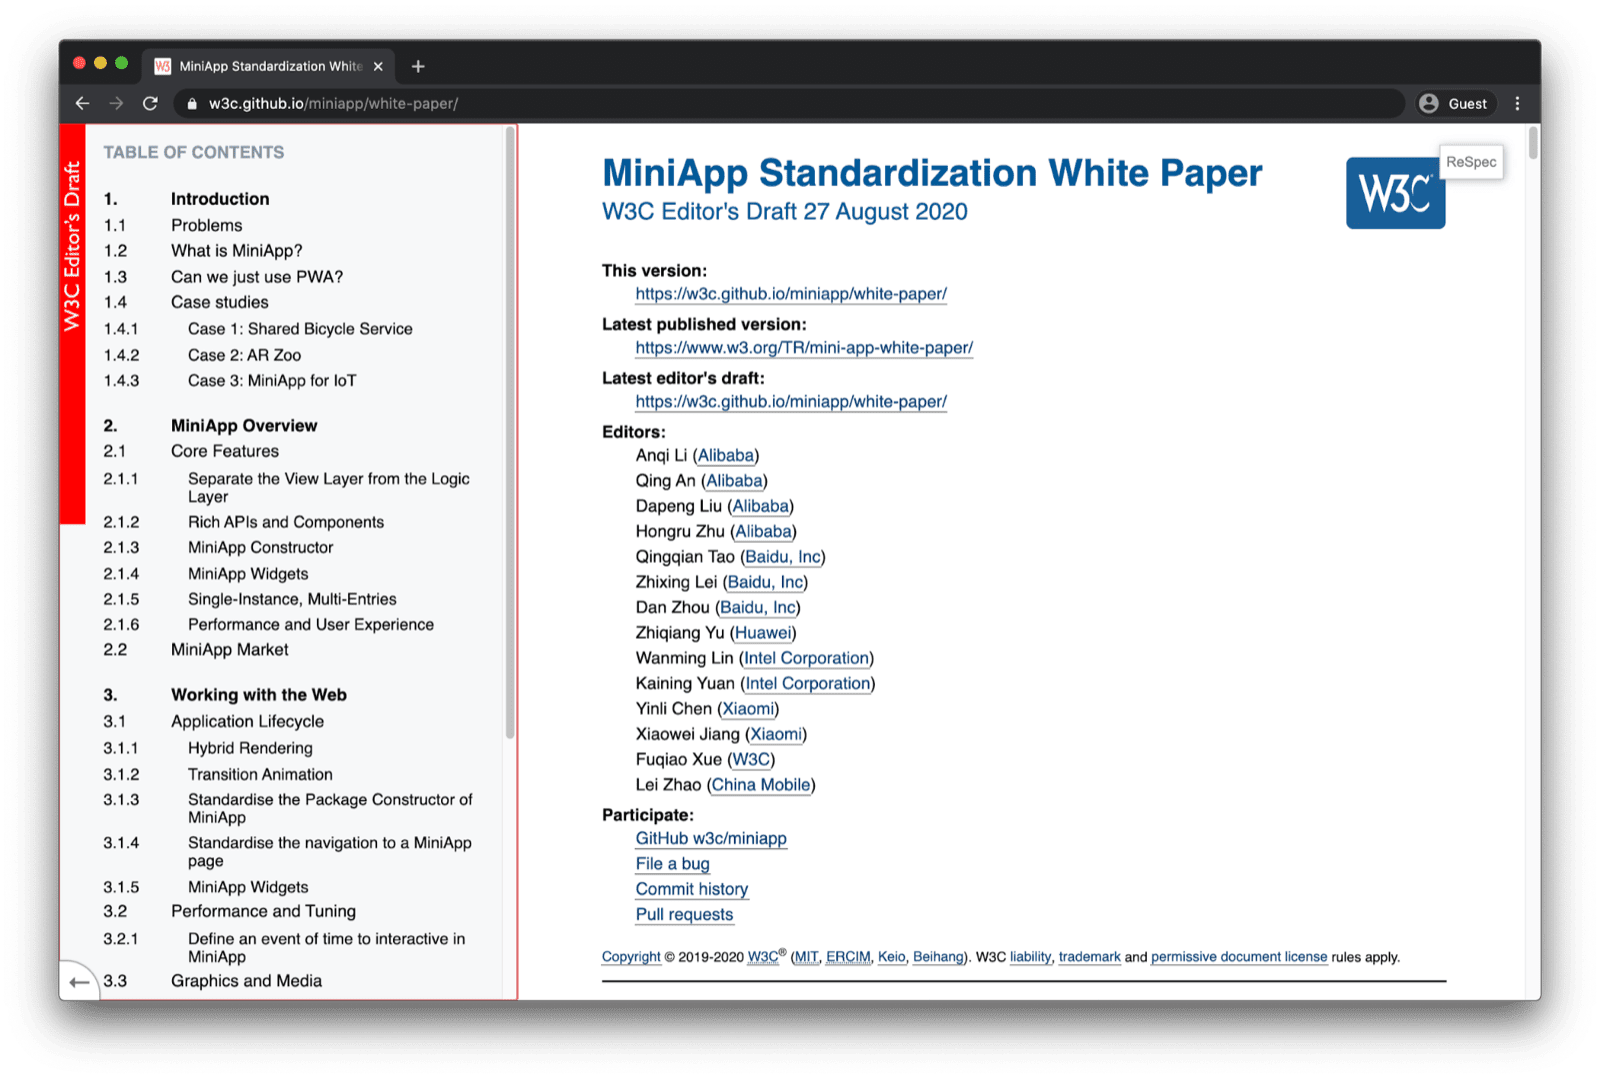 O cabeçalho do artigo sobre padronização do MiniApp em uma janela do navegador.